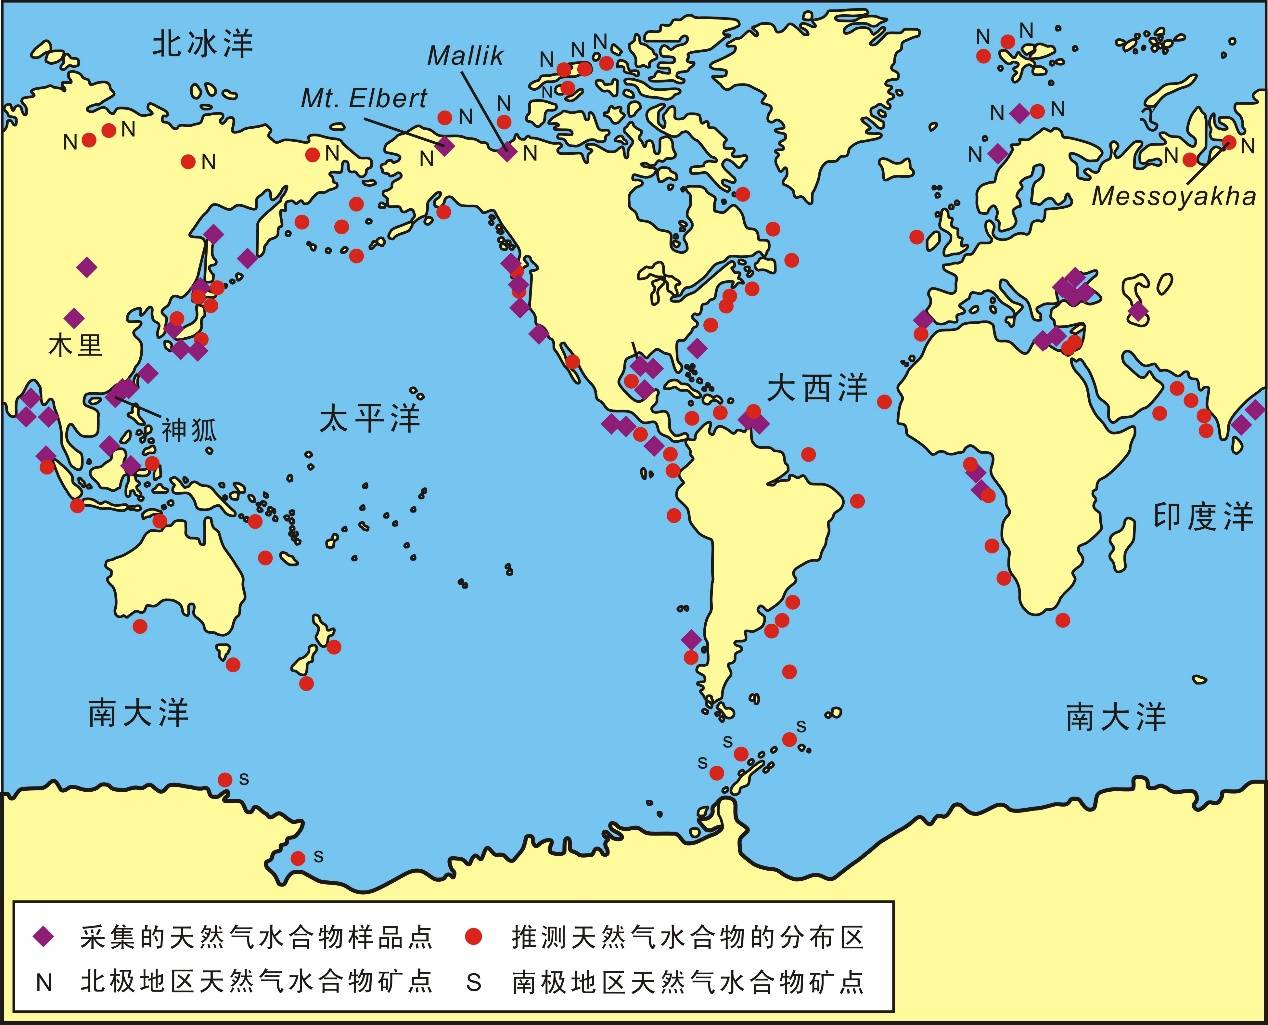 中国地质调查局官网《可燃冰在哪里?》世界上的可燃冰都分布在哪里呢?